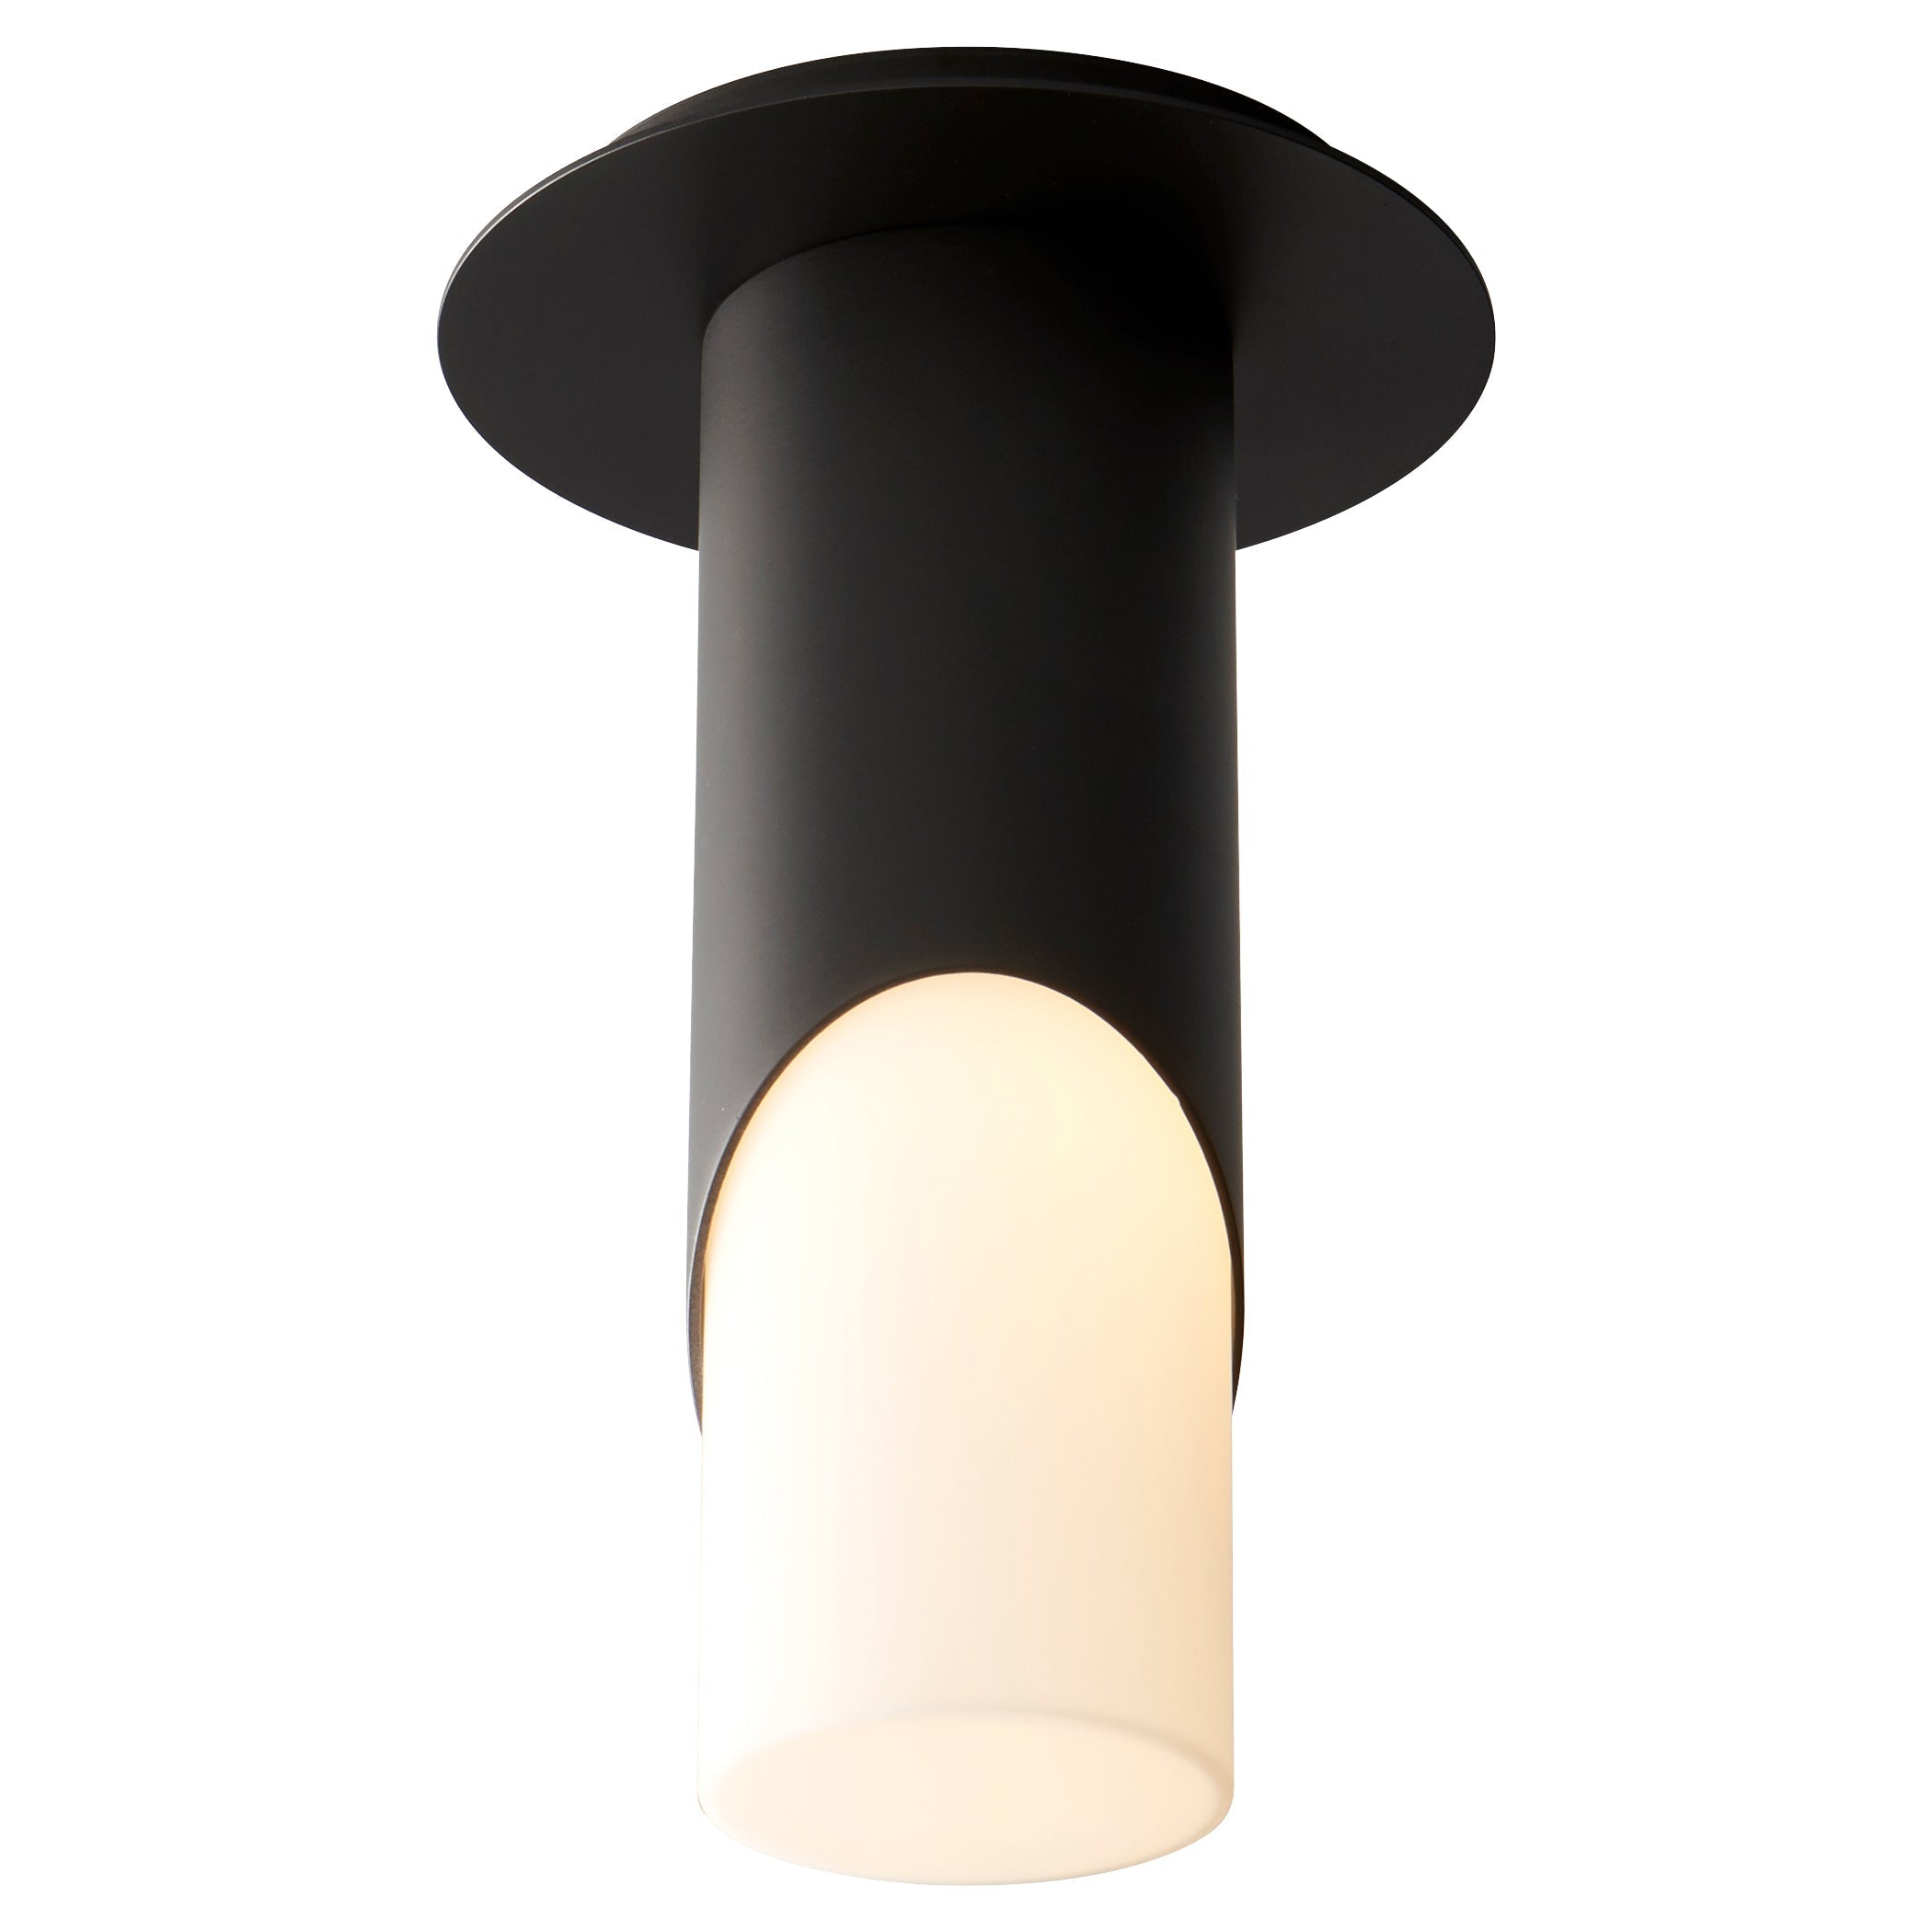 Oxygen Ellipse 3-353-115 Modern Cylinder Ceiling Light Fixture - Black